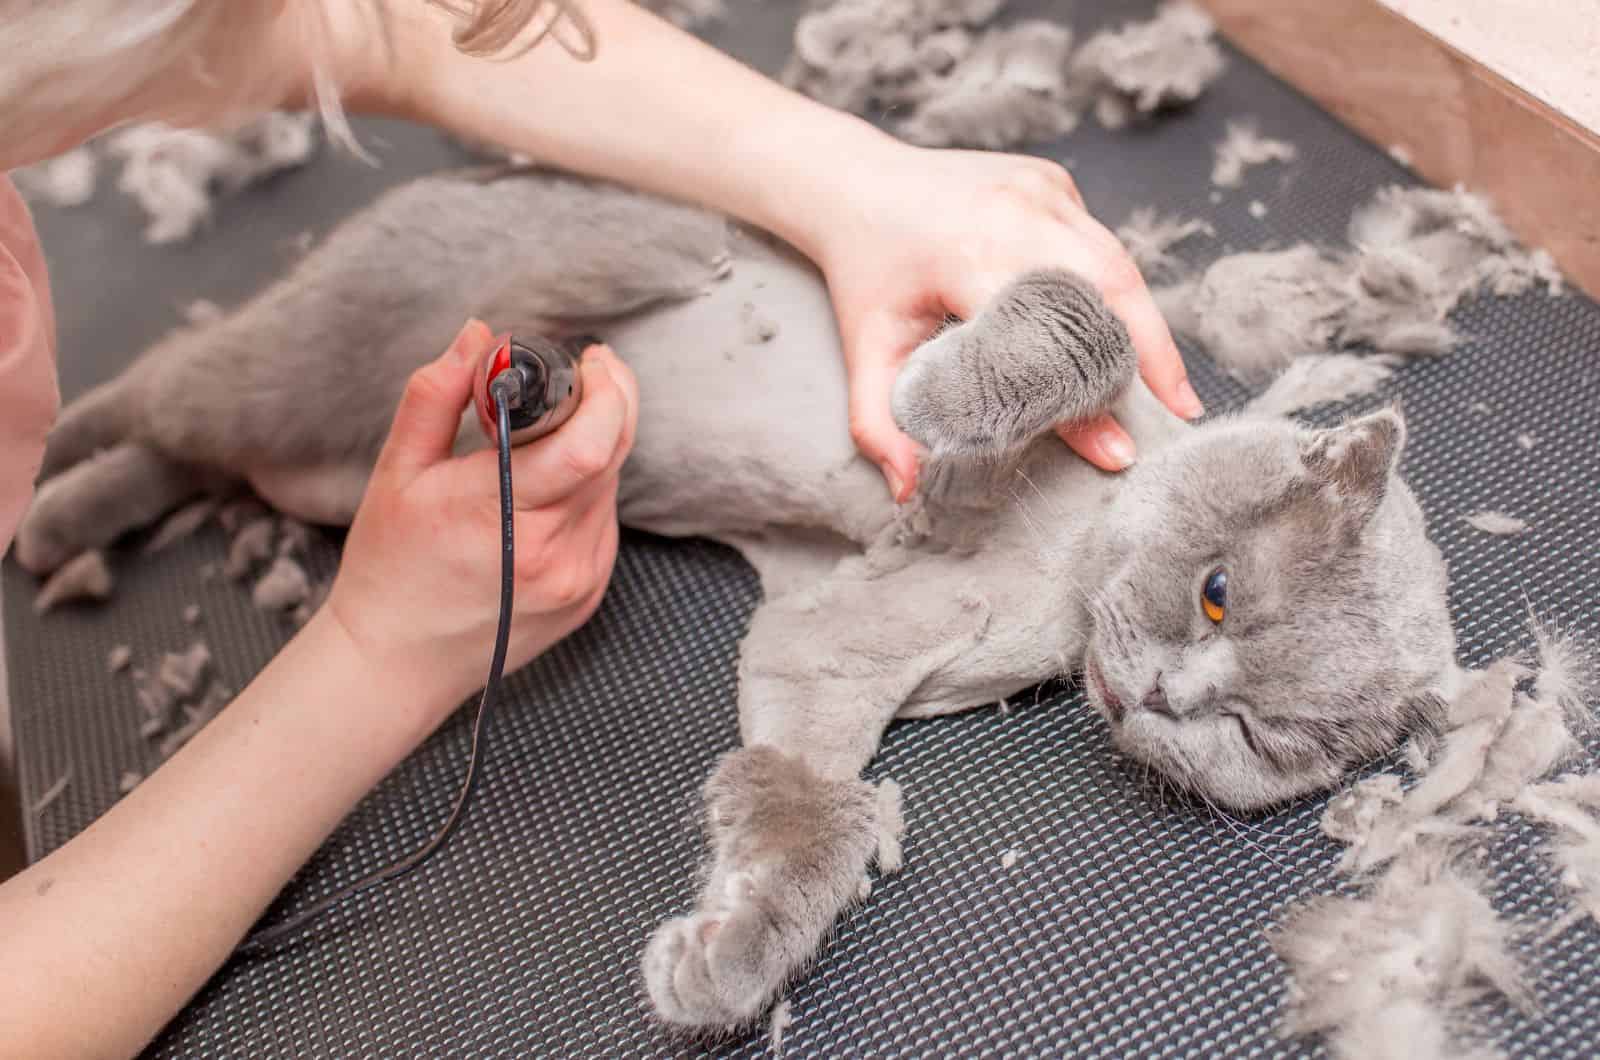 owner shaving cat